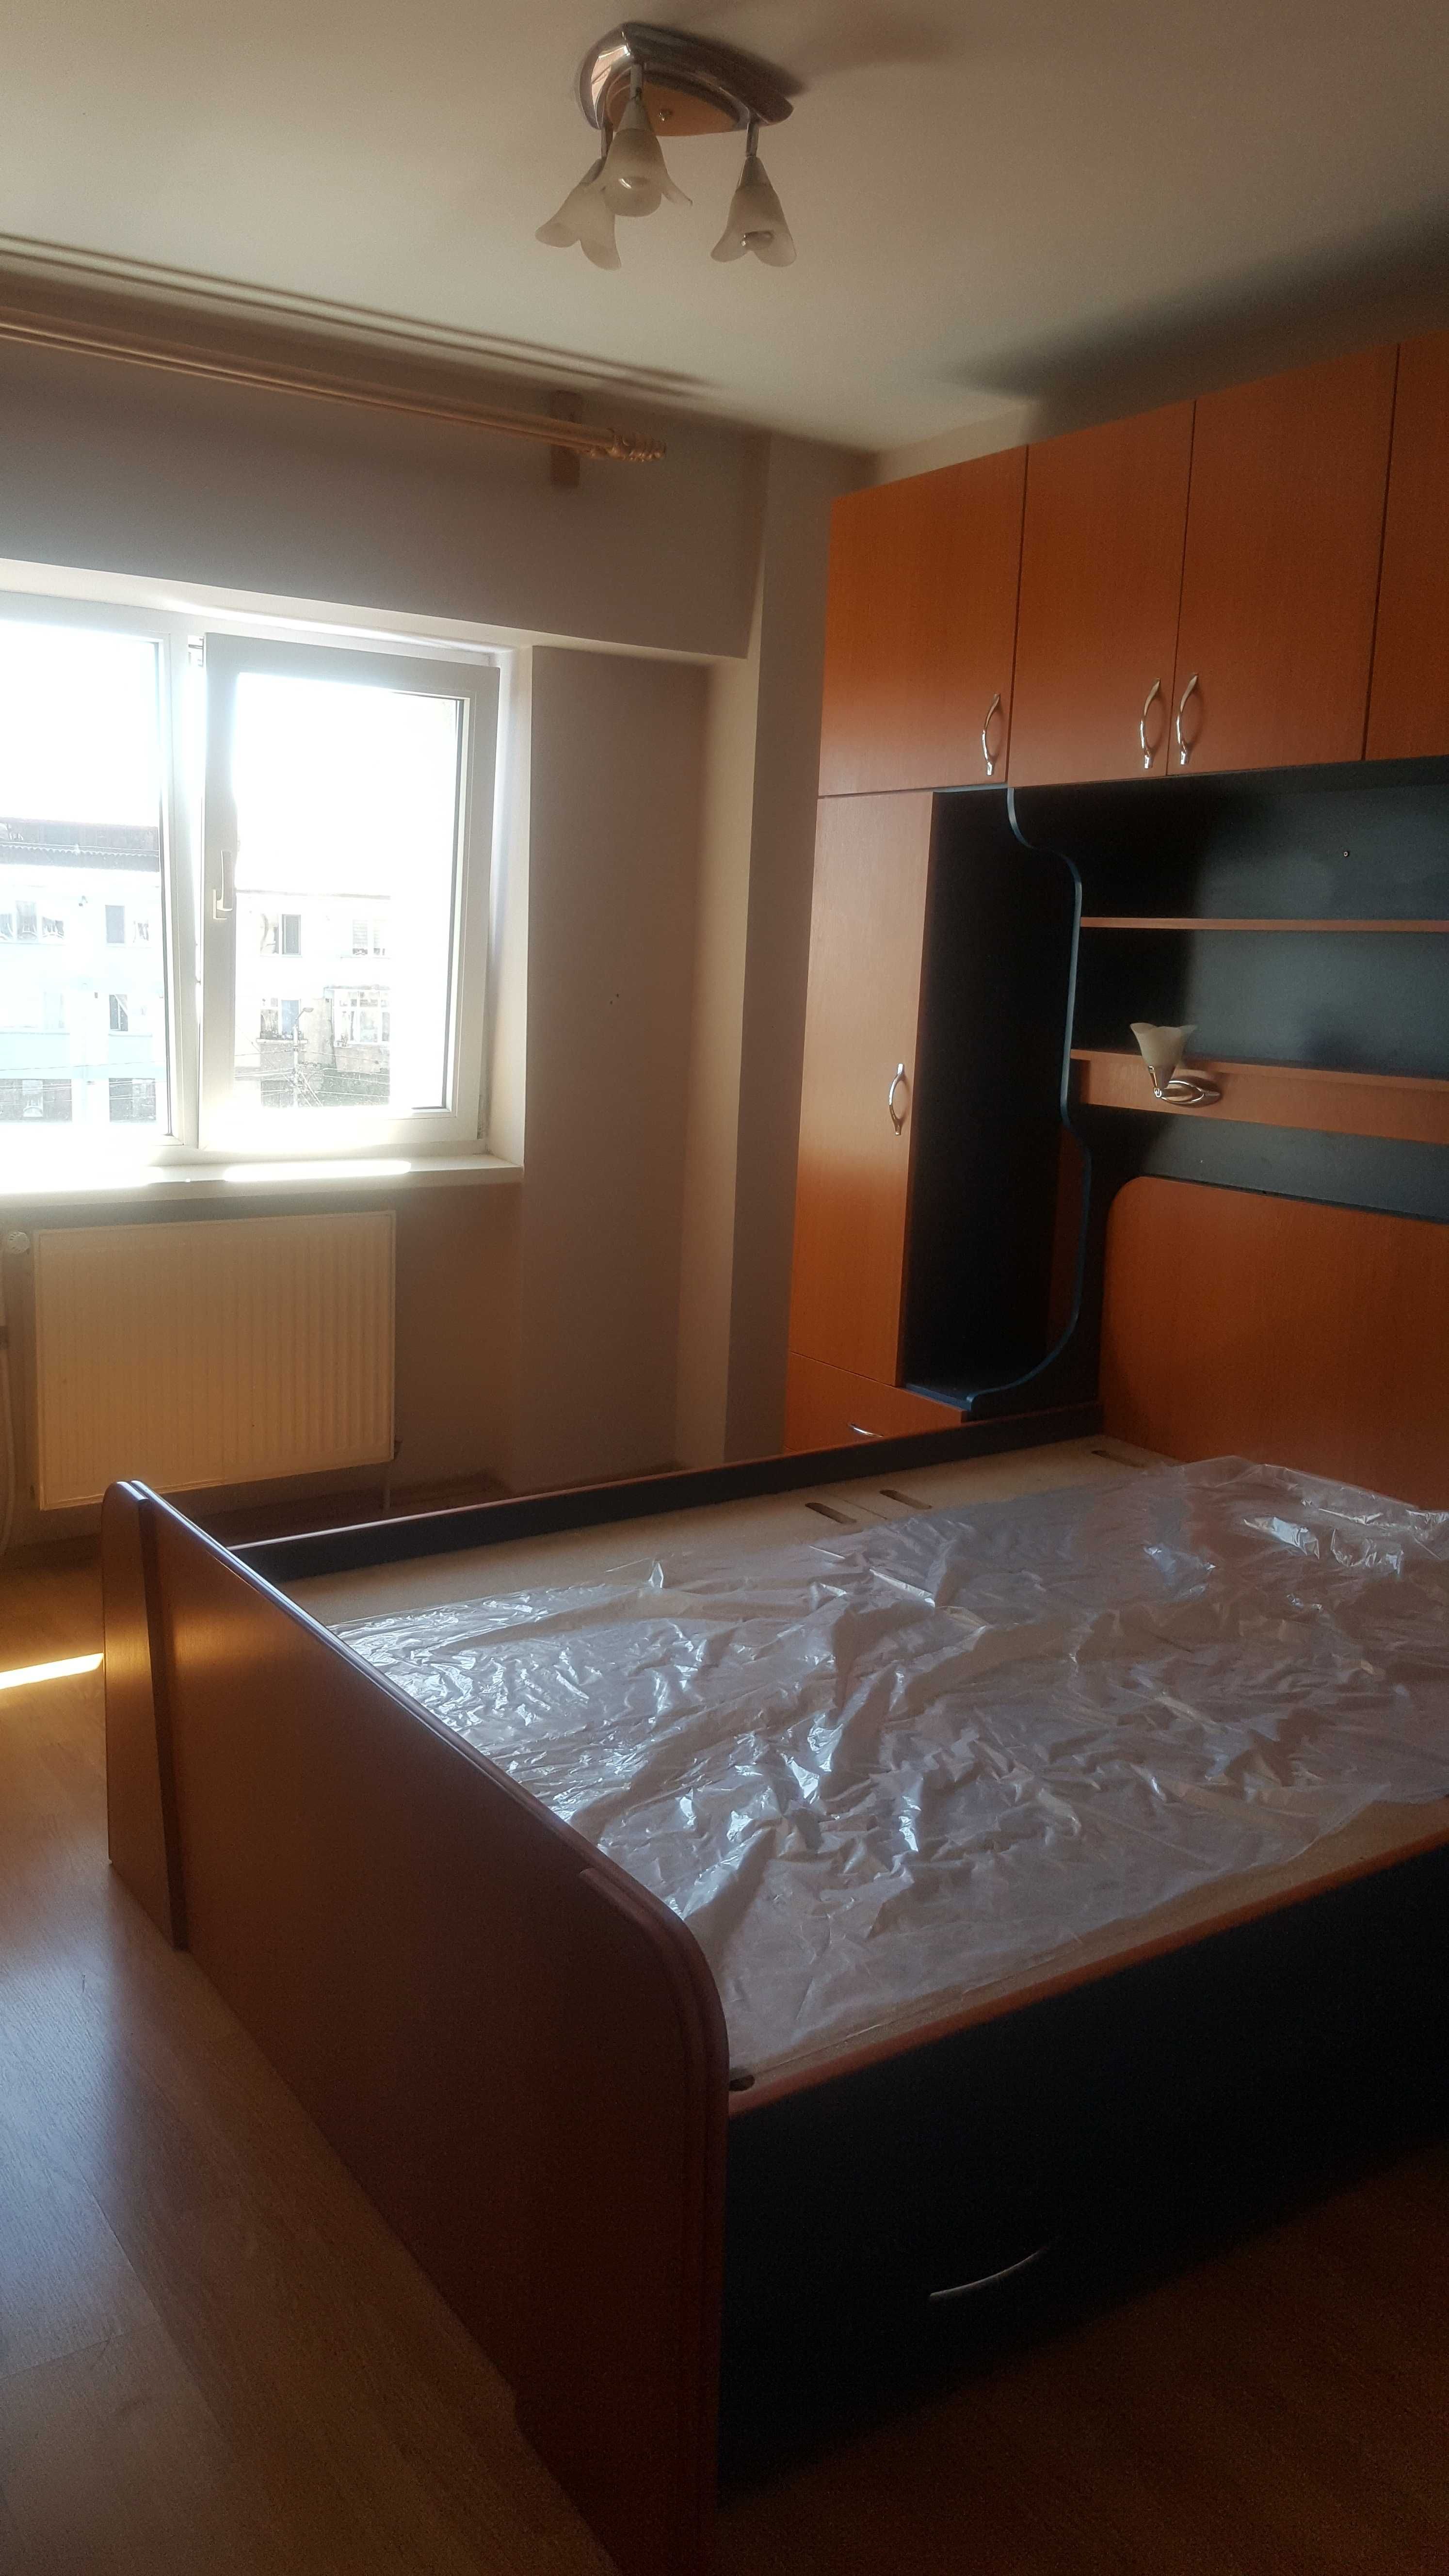 Apartament cu 2 dormitoare +living + mansarda